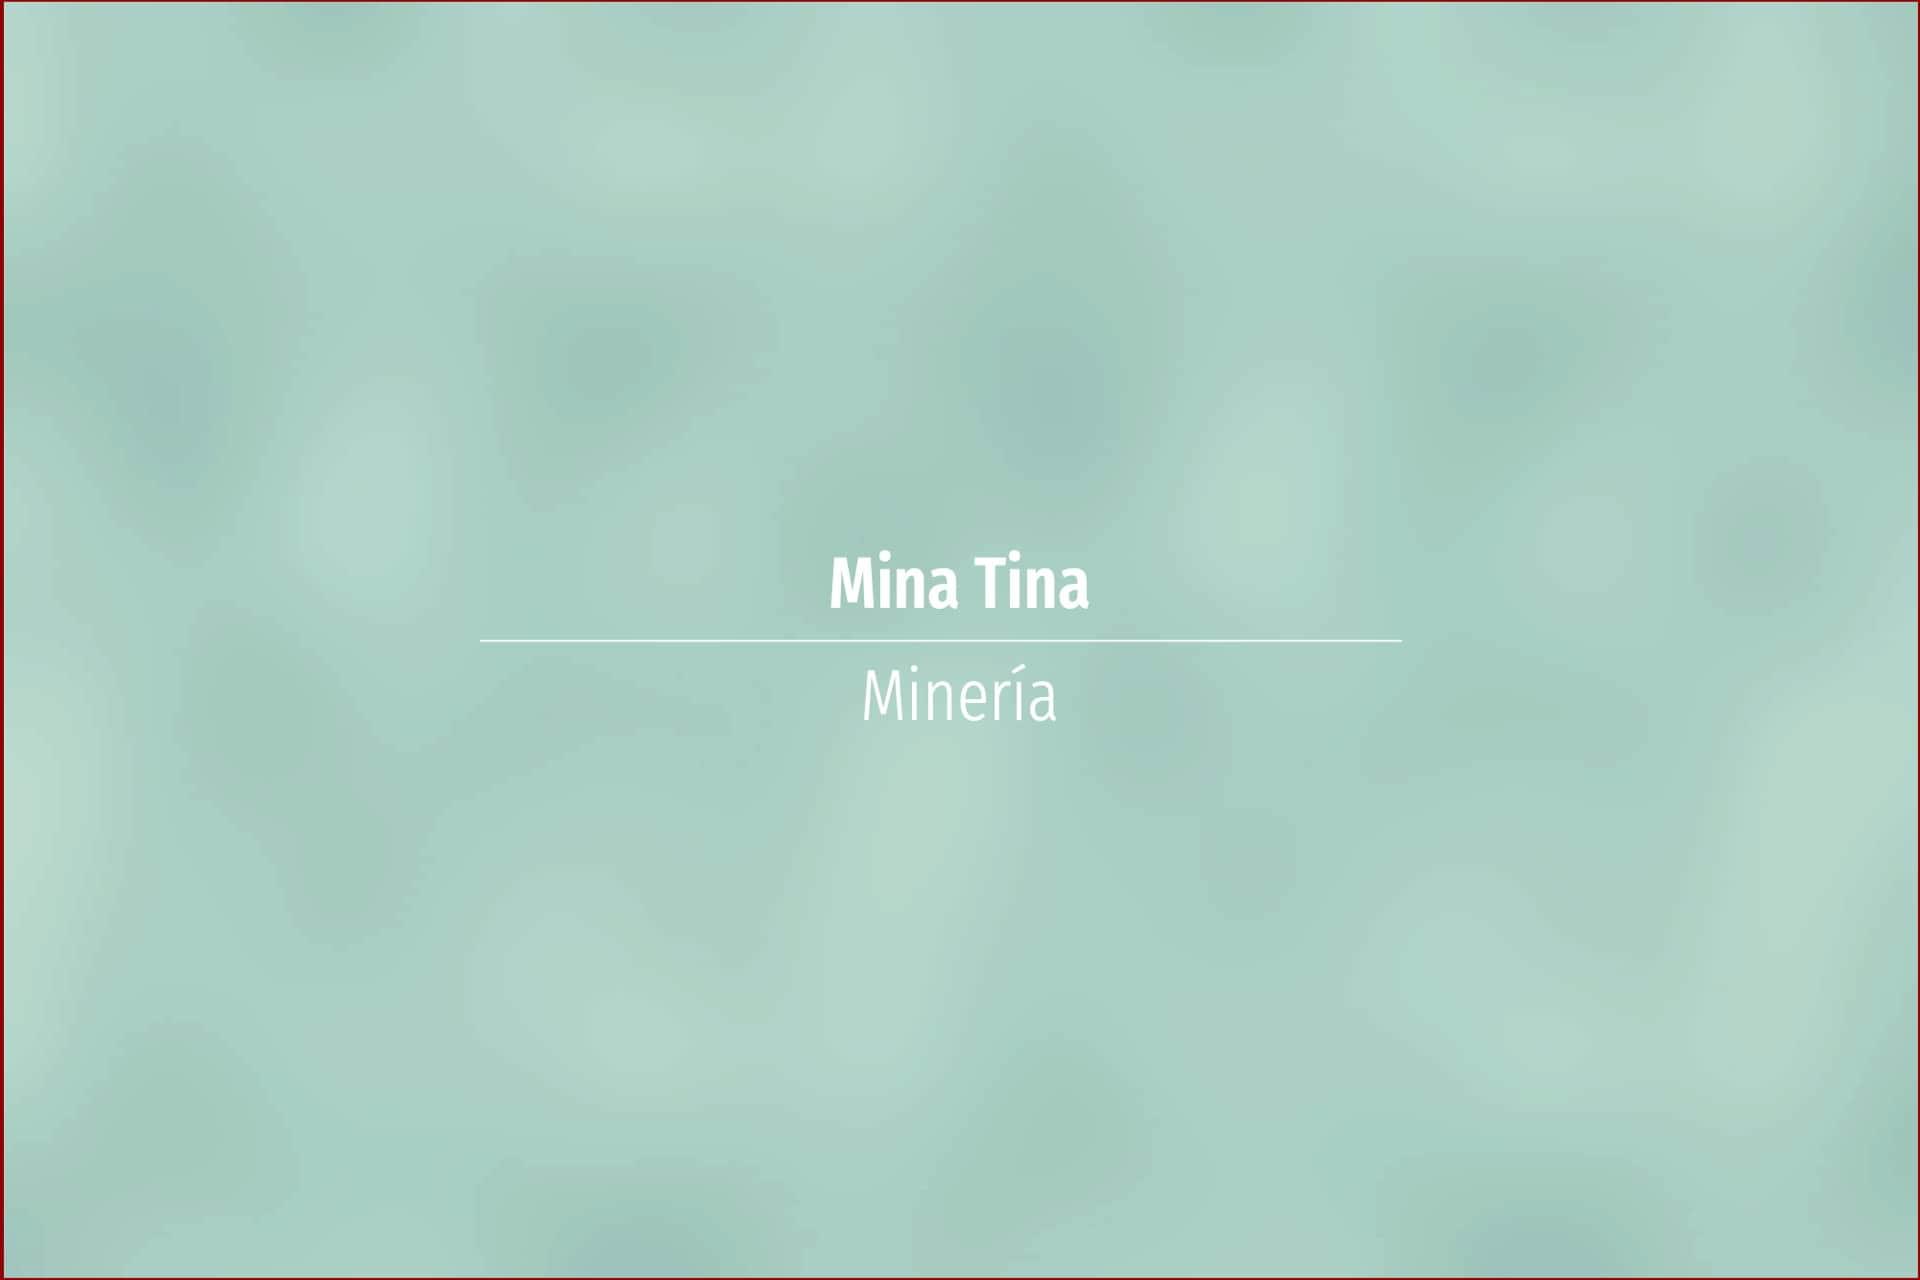 Mina Tina